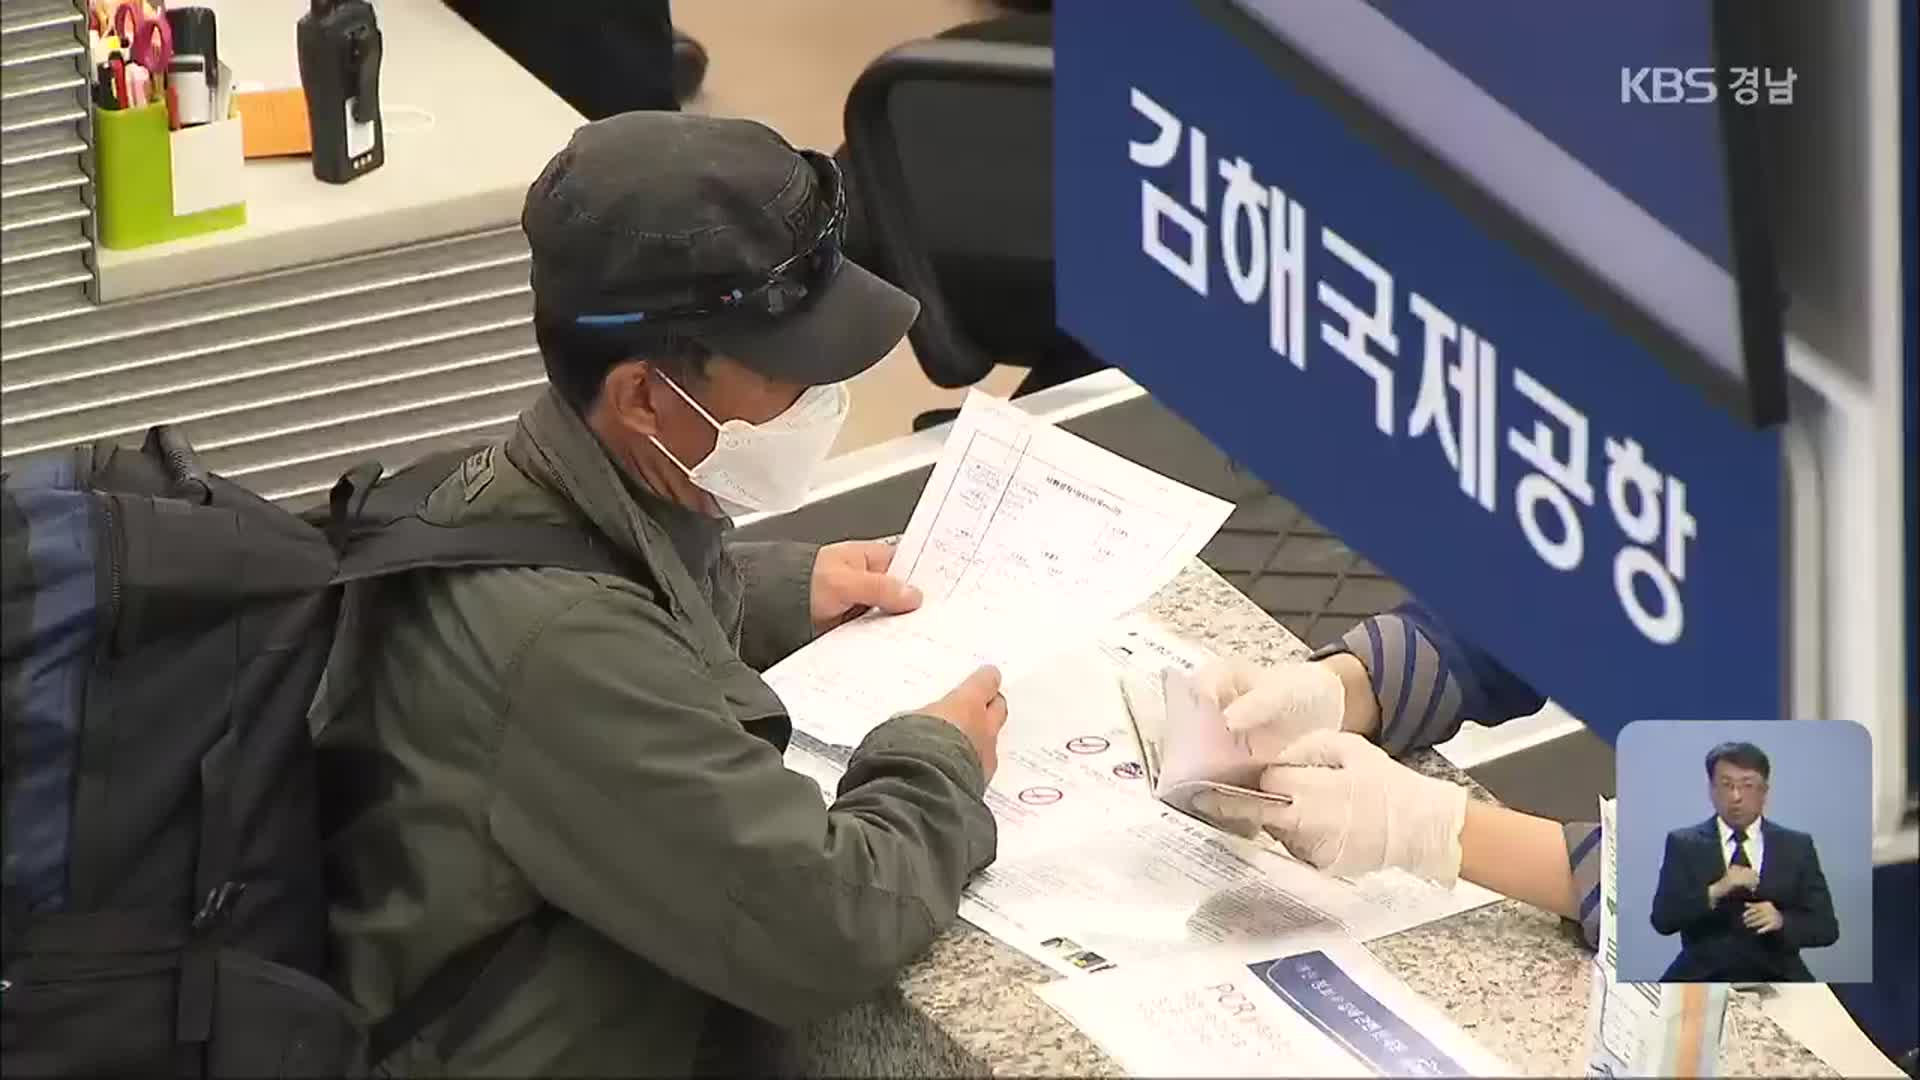 김해공항 국제선 6개월 만에 운항 재개